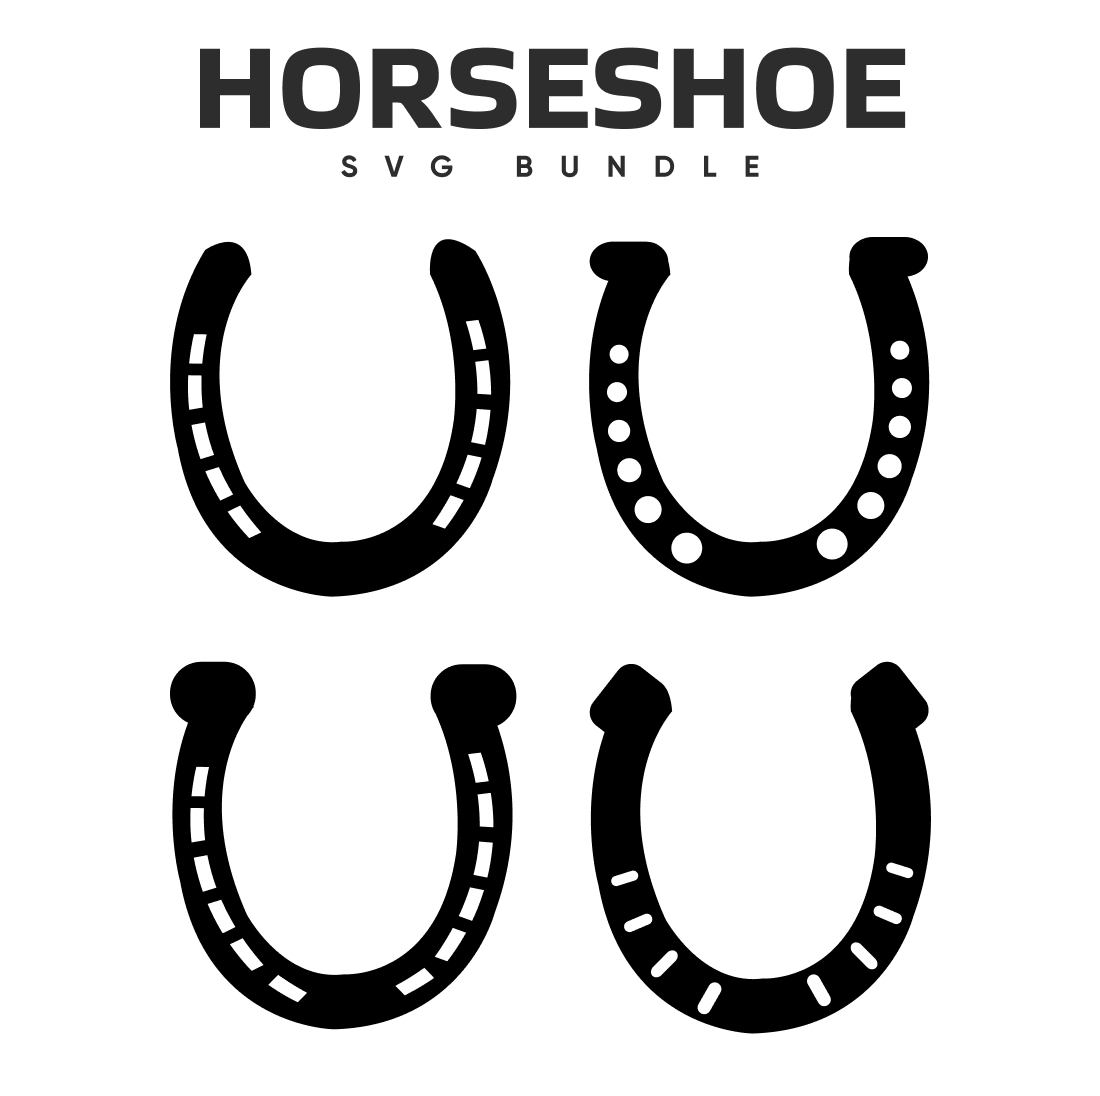 Horseshoe SVG Free Bundle.